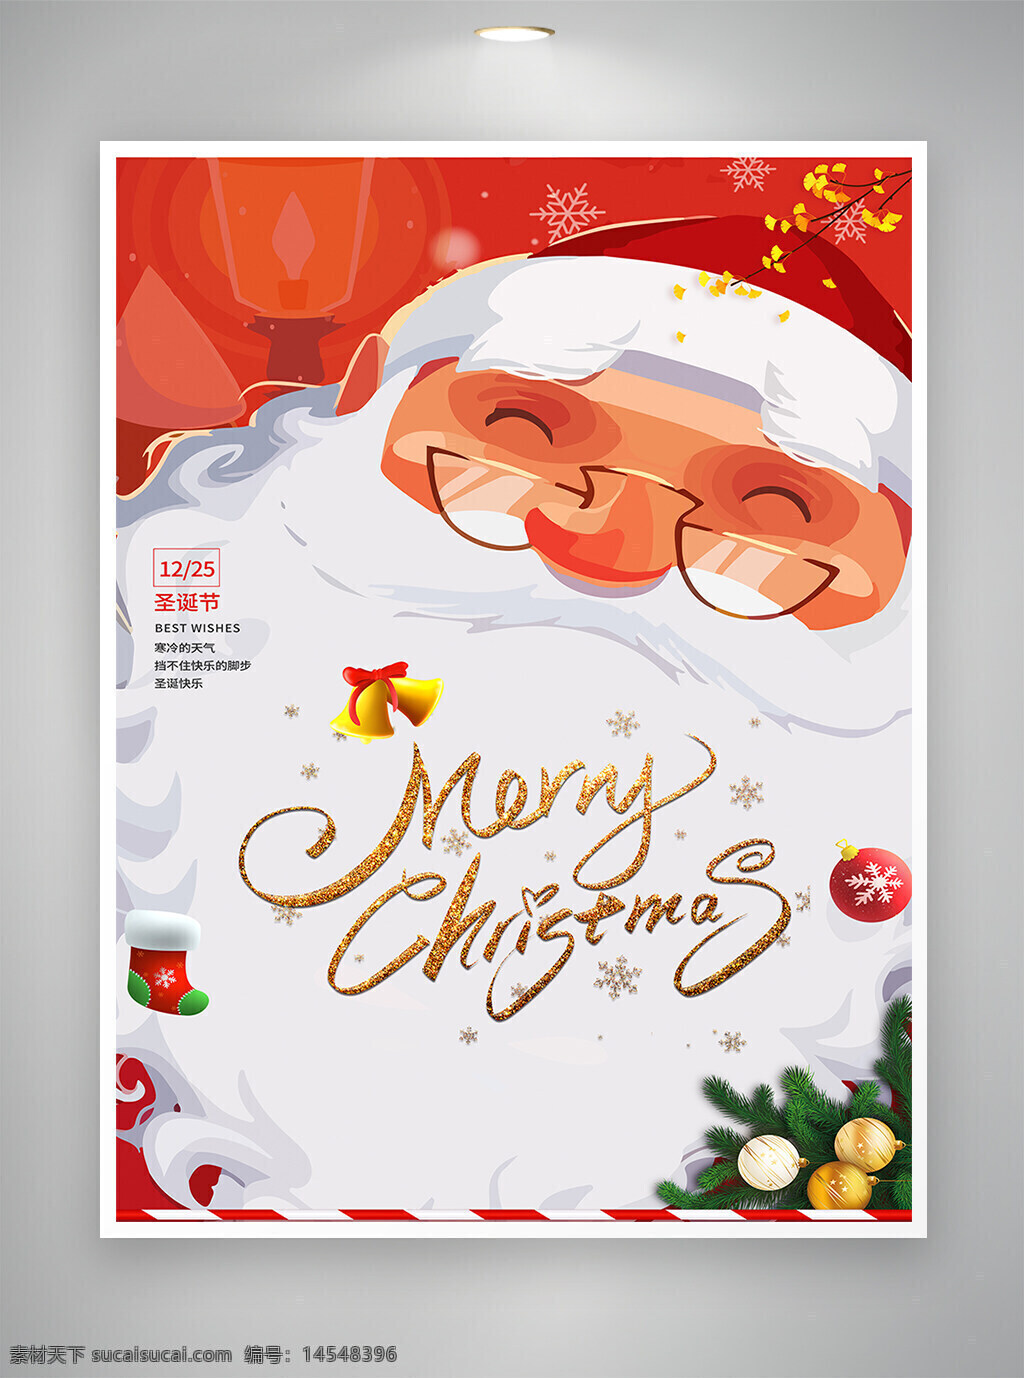 圣诞 圣诞节 圣诞海报 圣诞节海报 海报 圣诞老人 手绘海报 卡通海报 创意海报